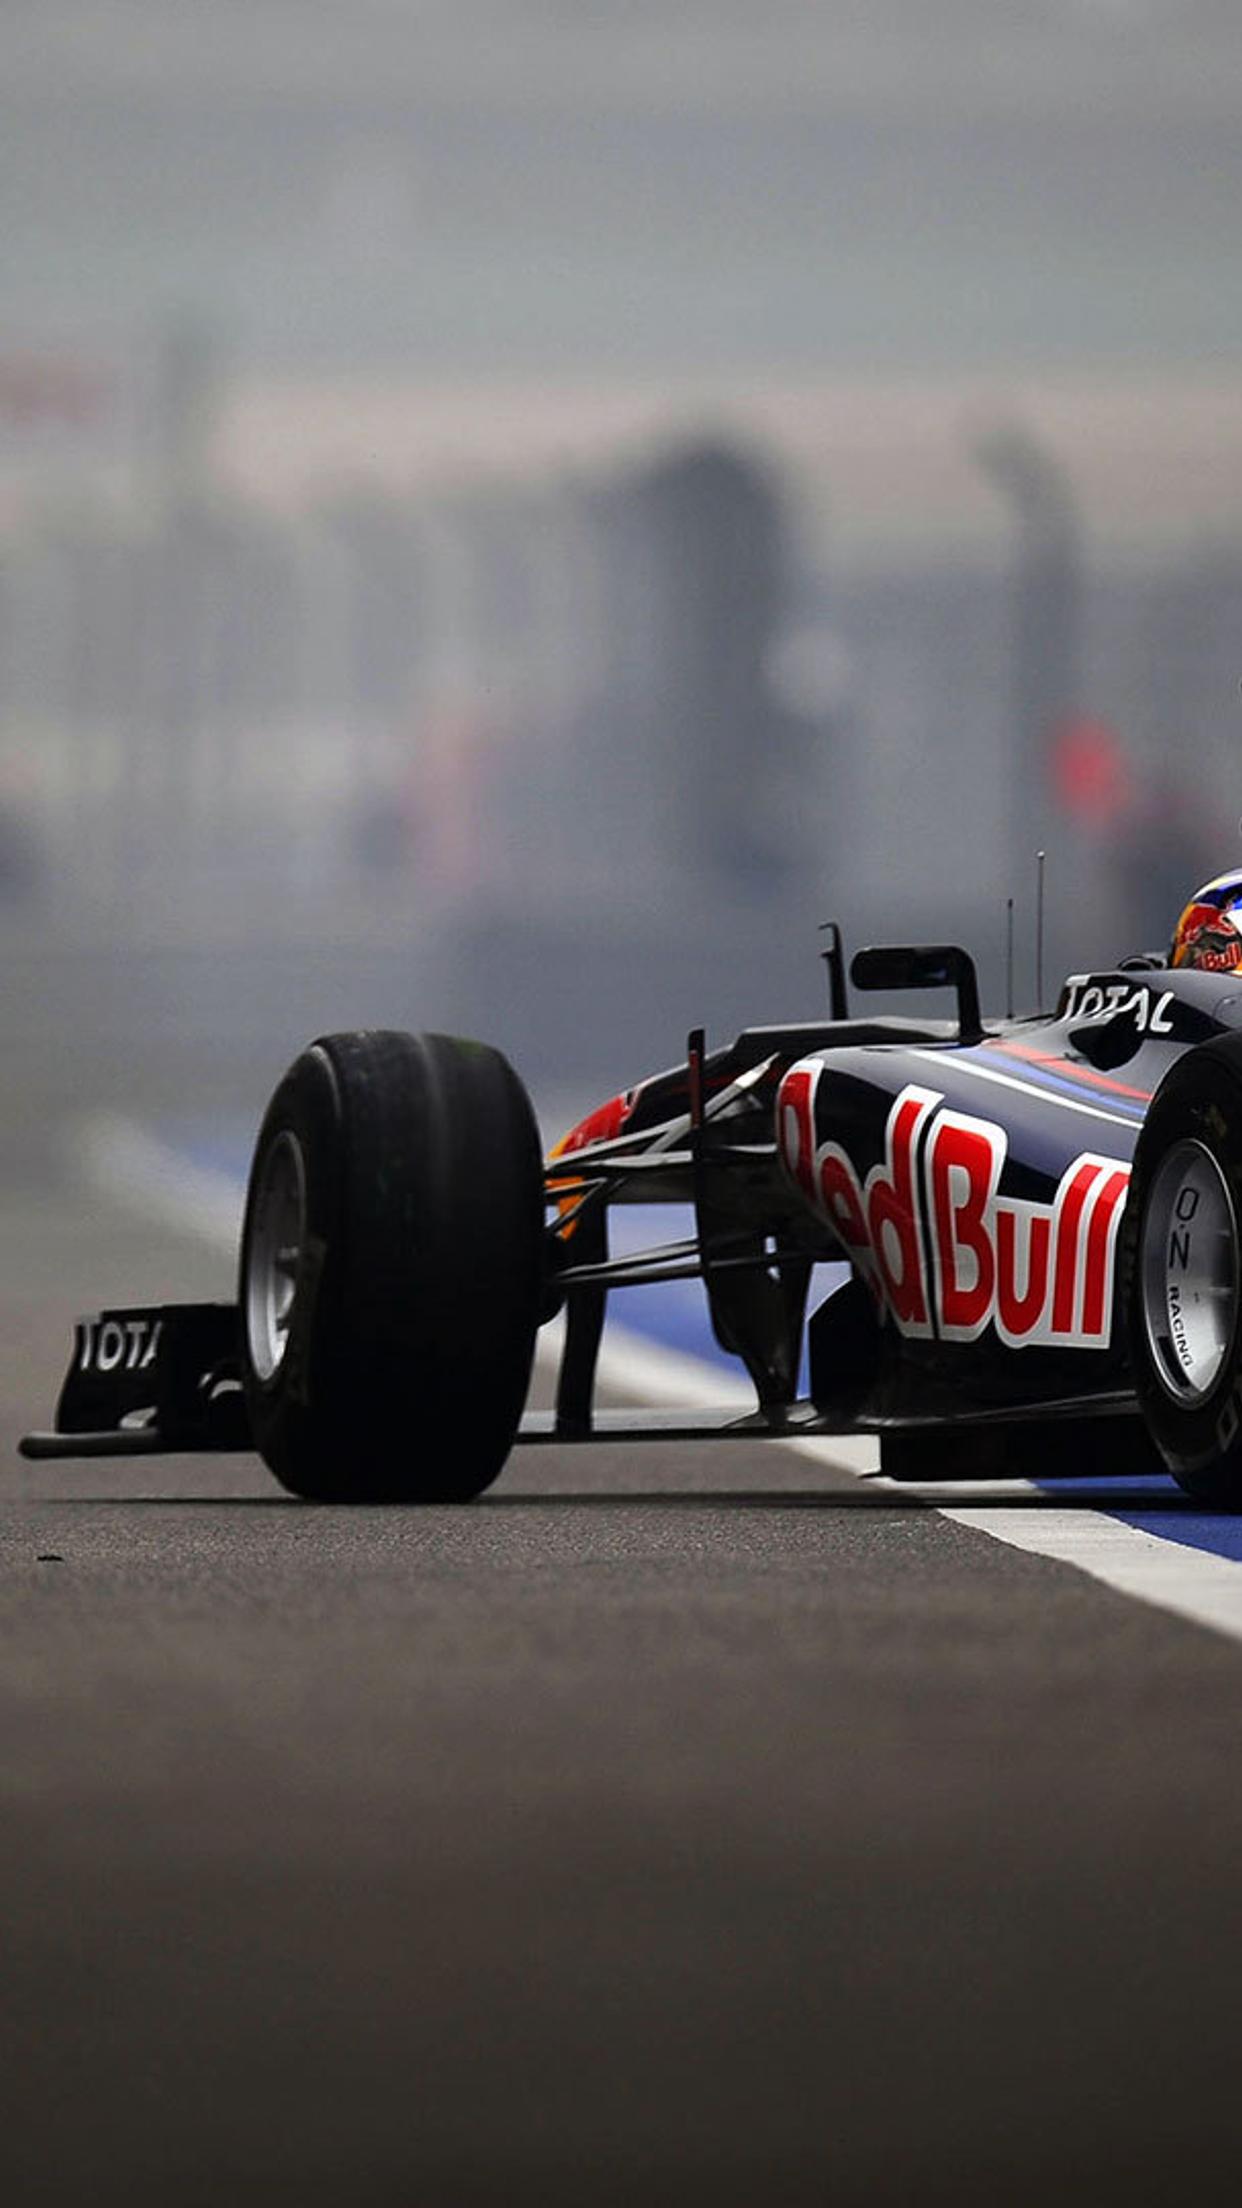 Red Bull sponsor for Formula 1 team car on the road